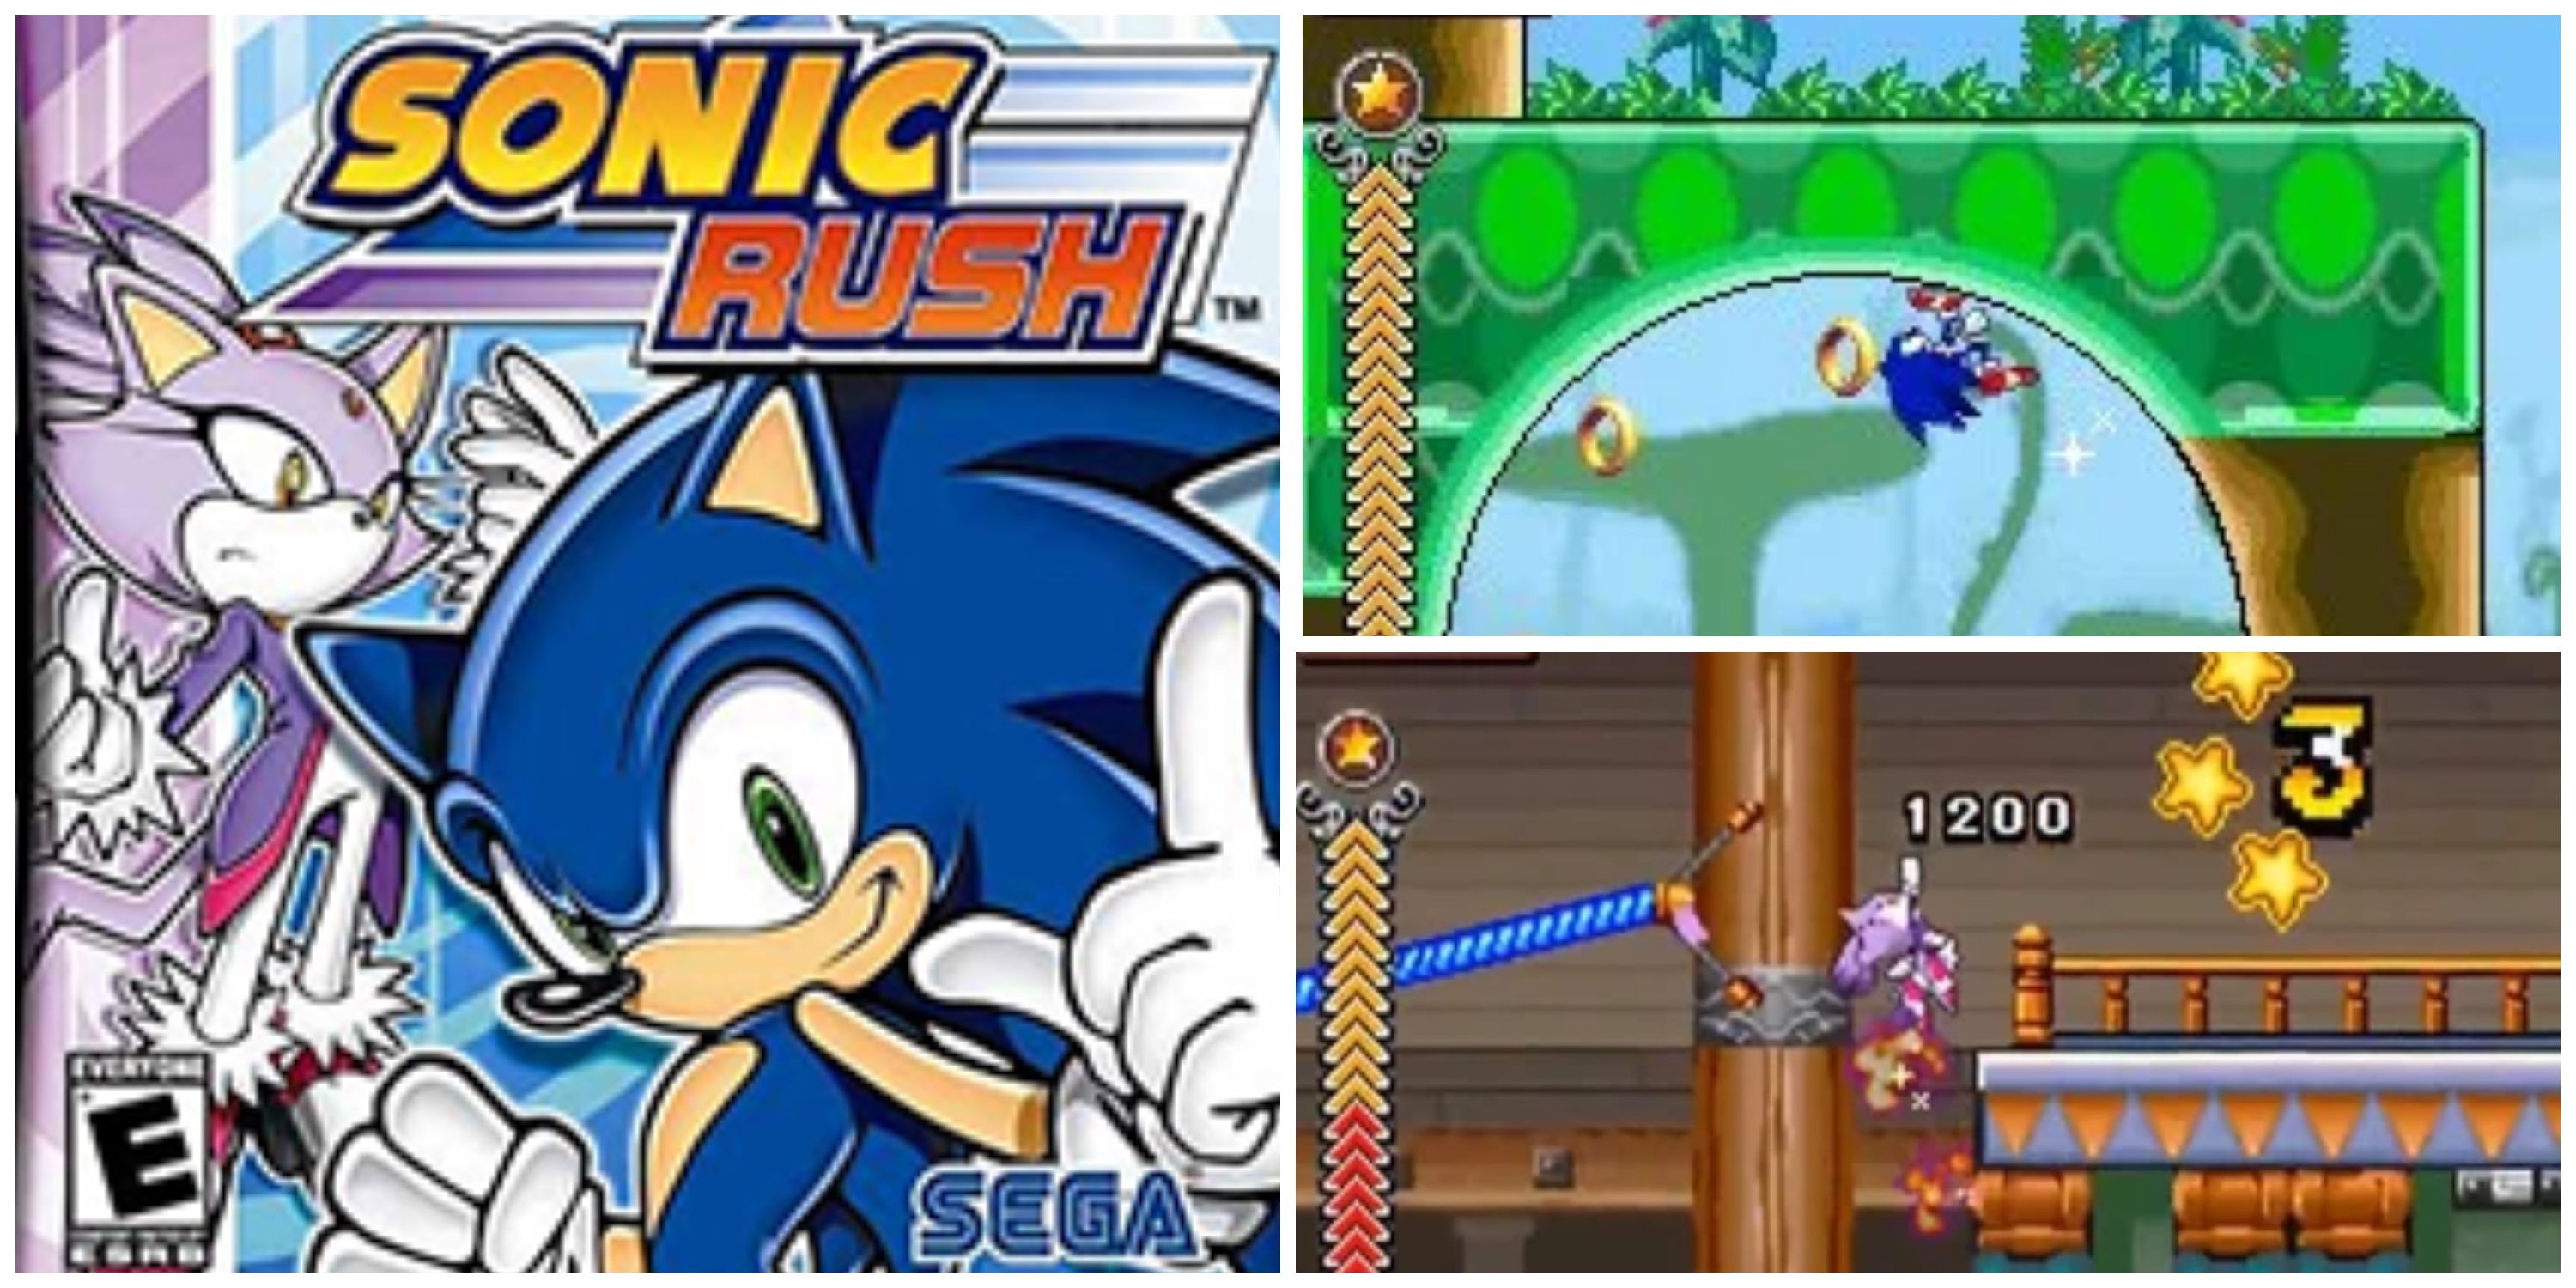 sonic rush cover art and screenshots